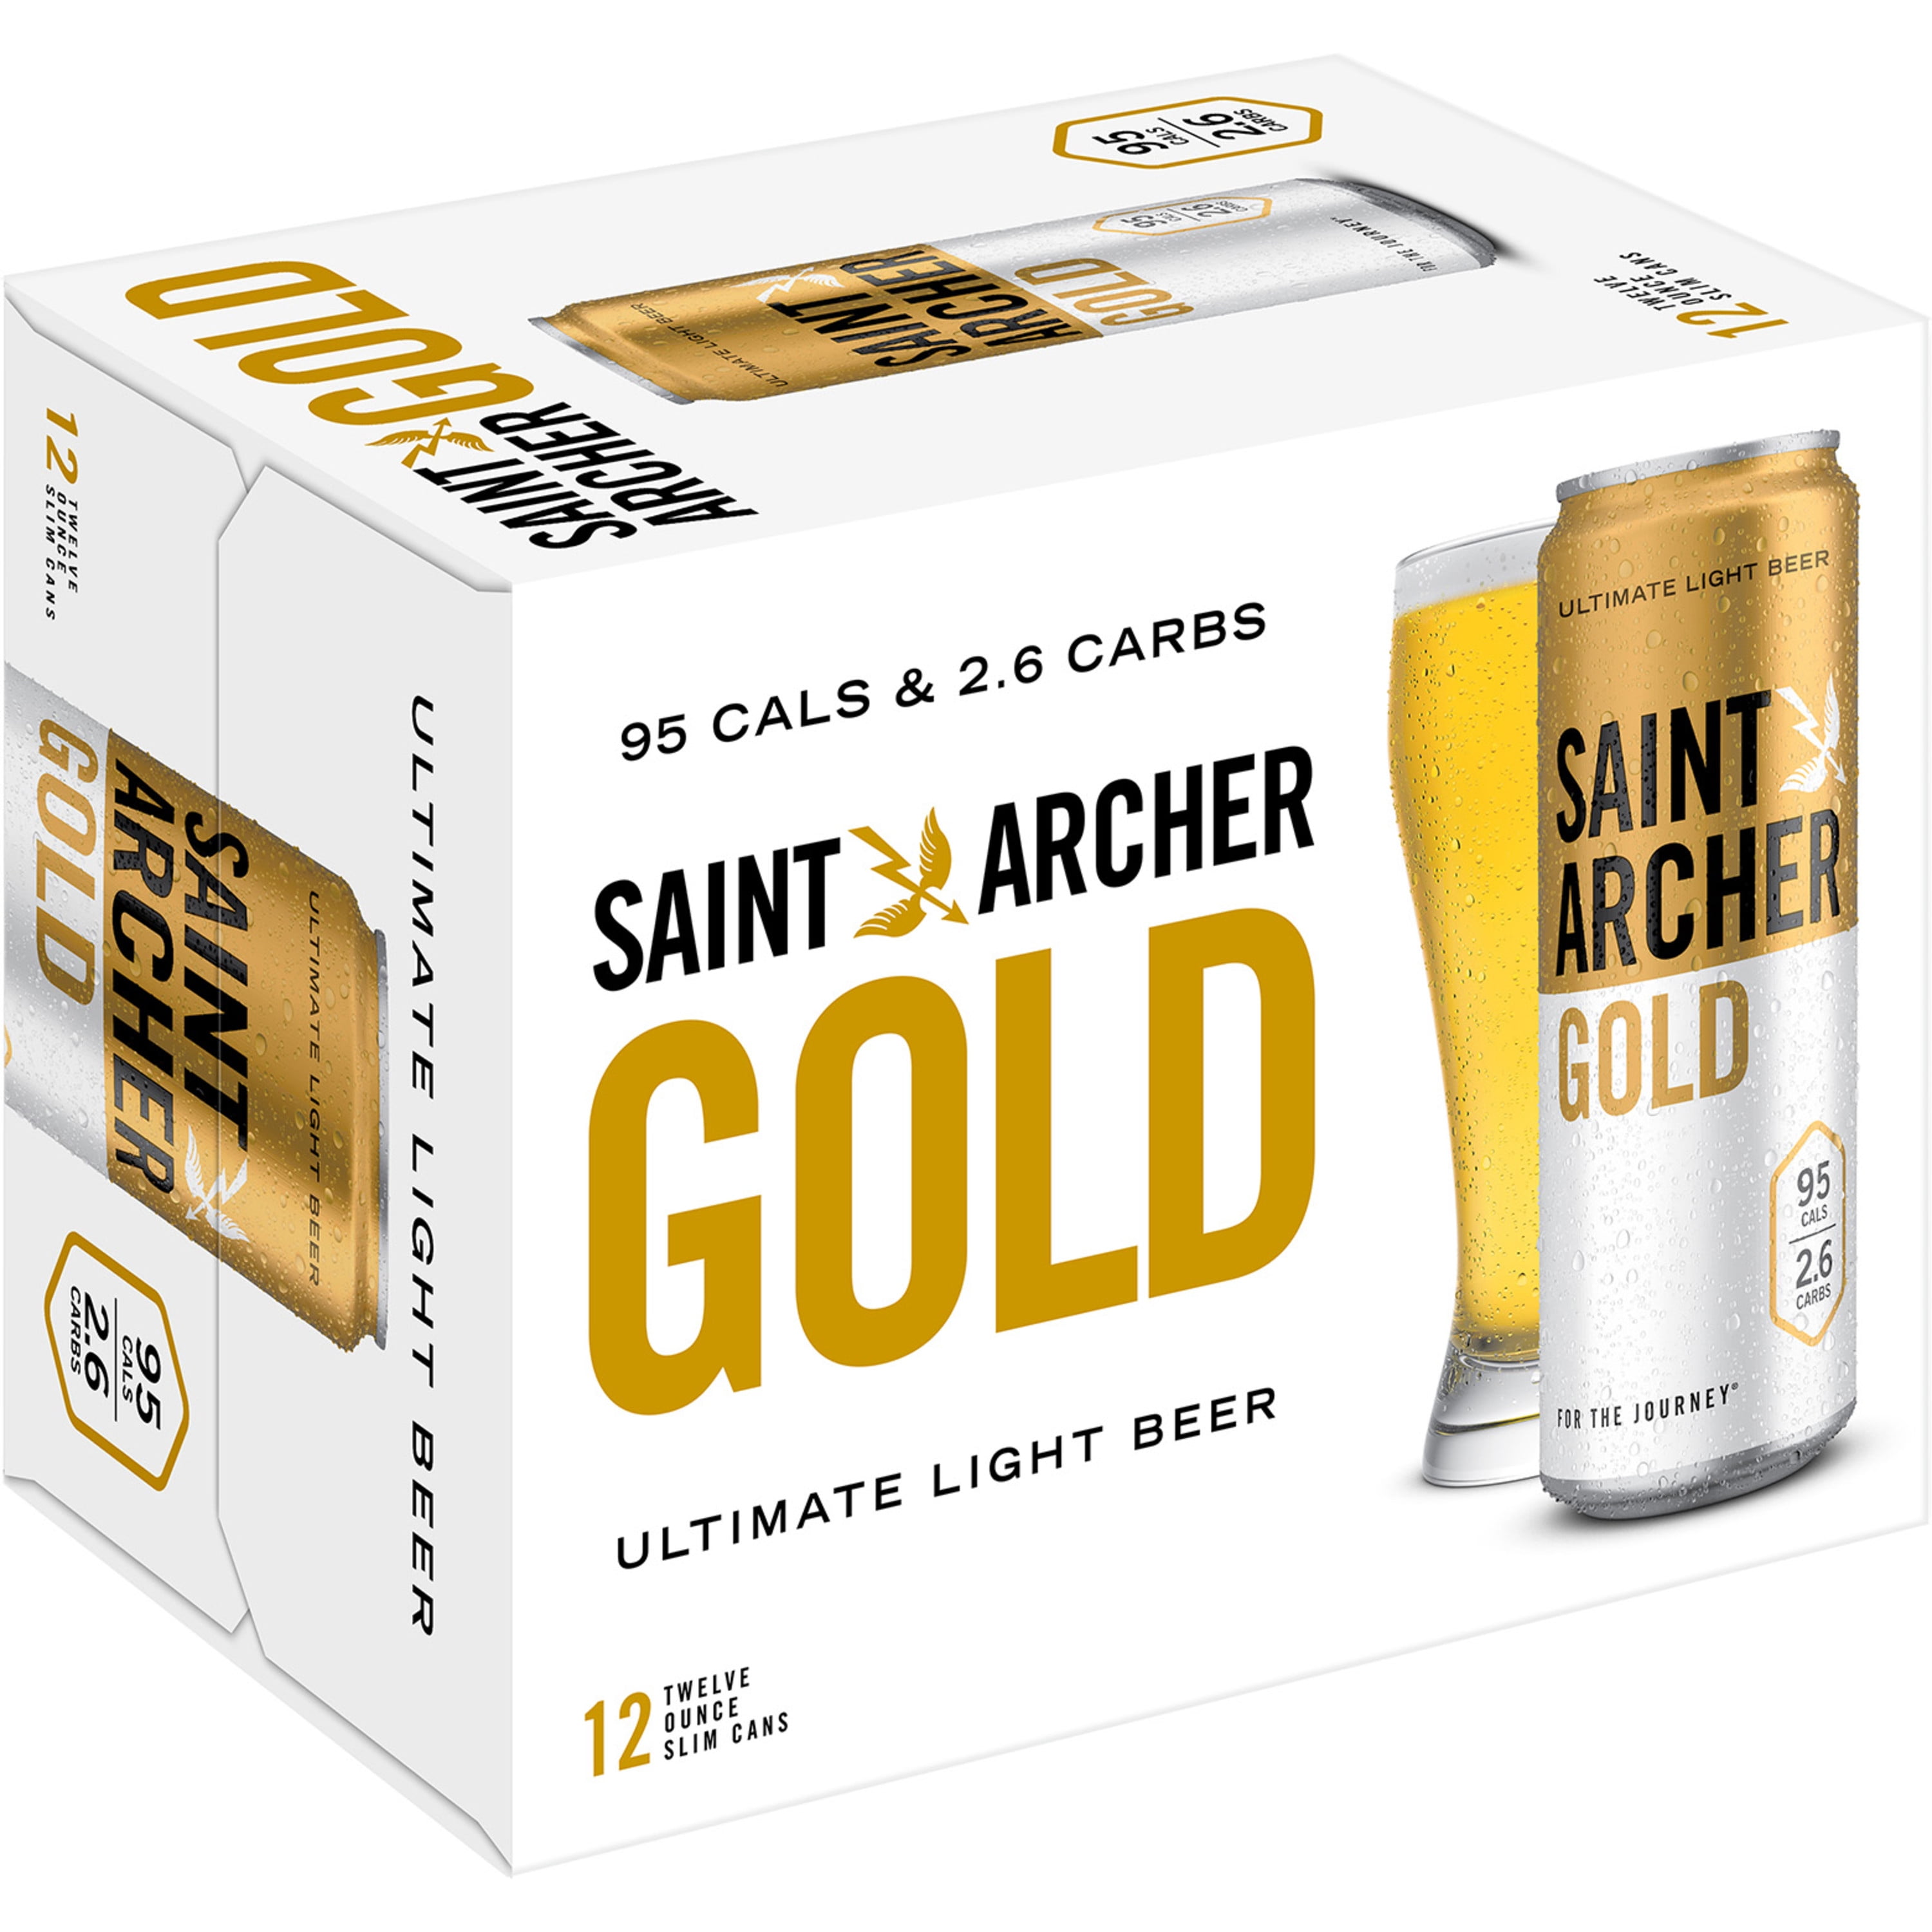 Saint Archer Gold Light Lager Beer Craft Beer Beer 12 Pack 12 Fl Oz Cans 4 2 Abv Walmart Com Walmart Com